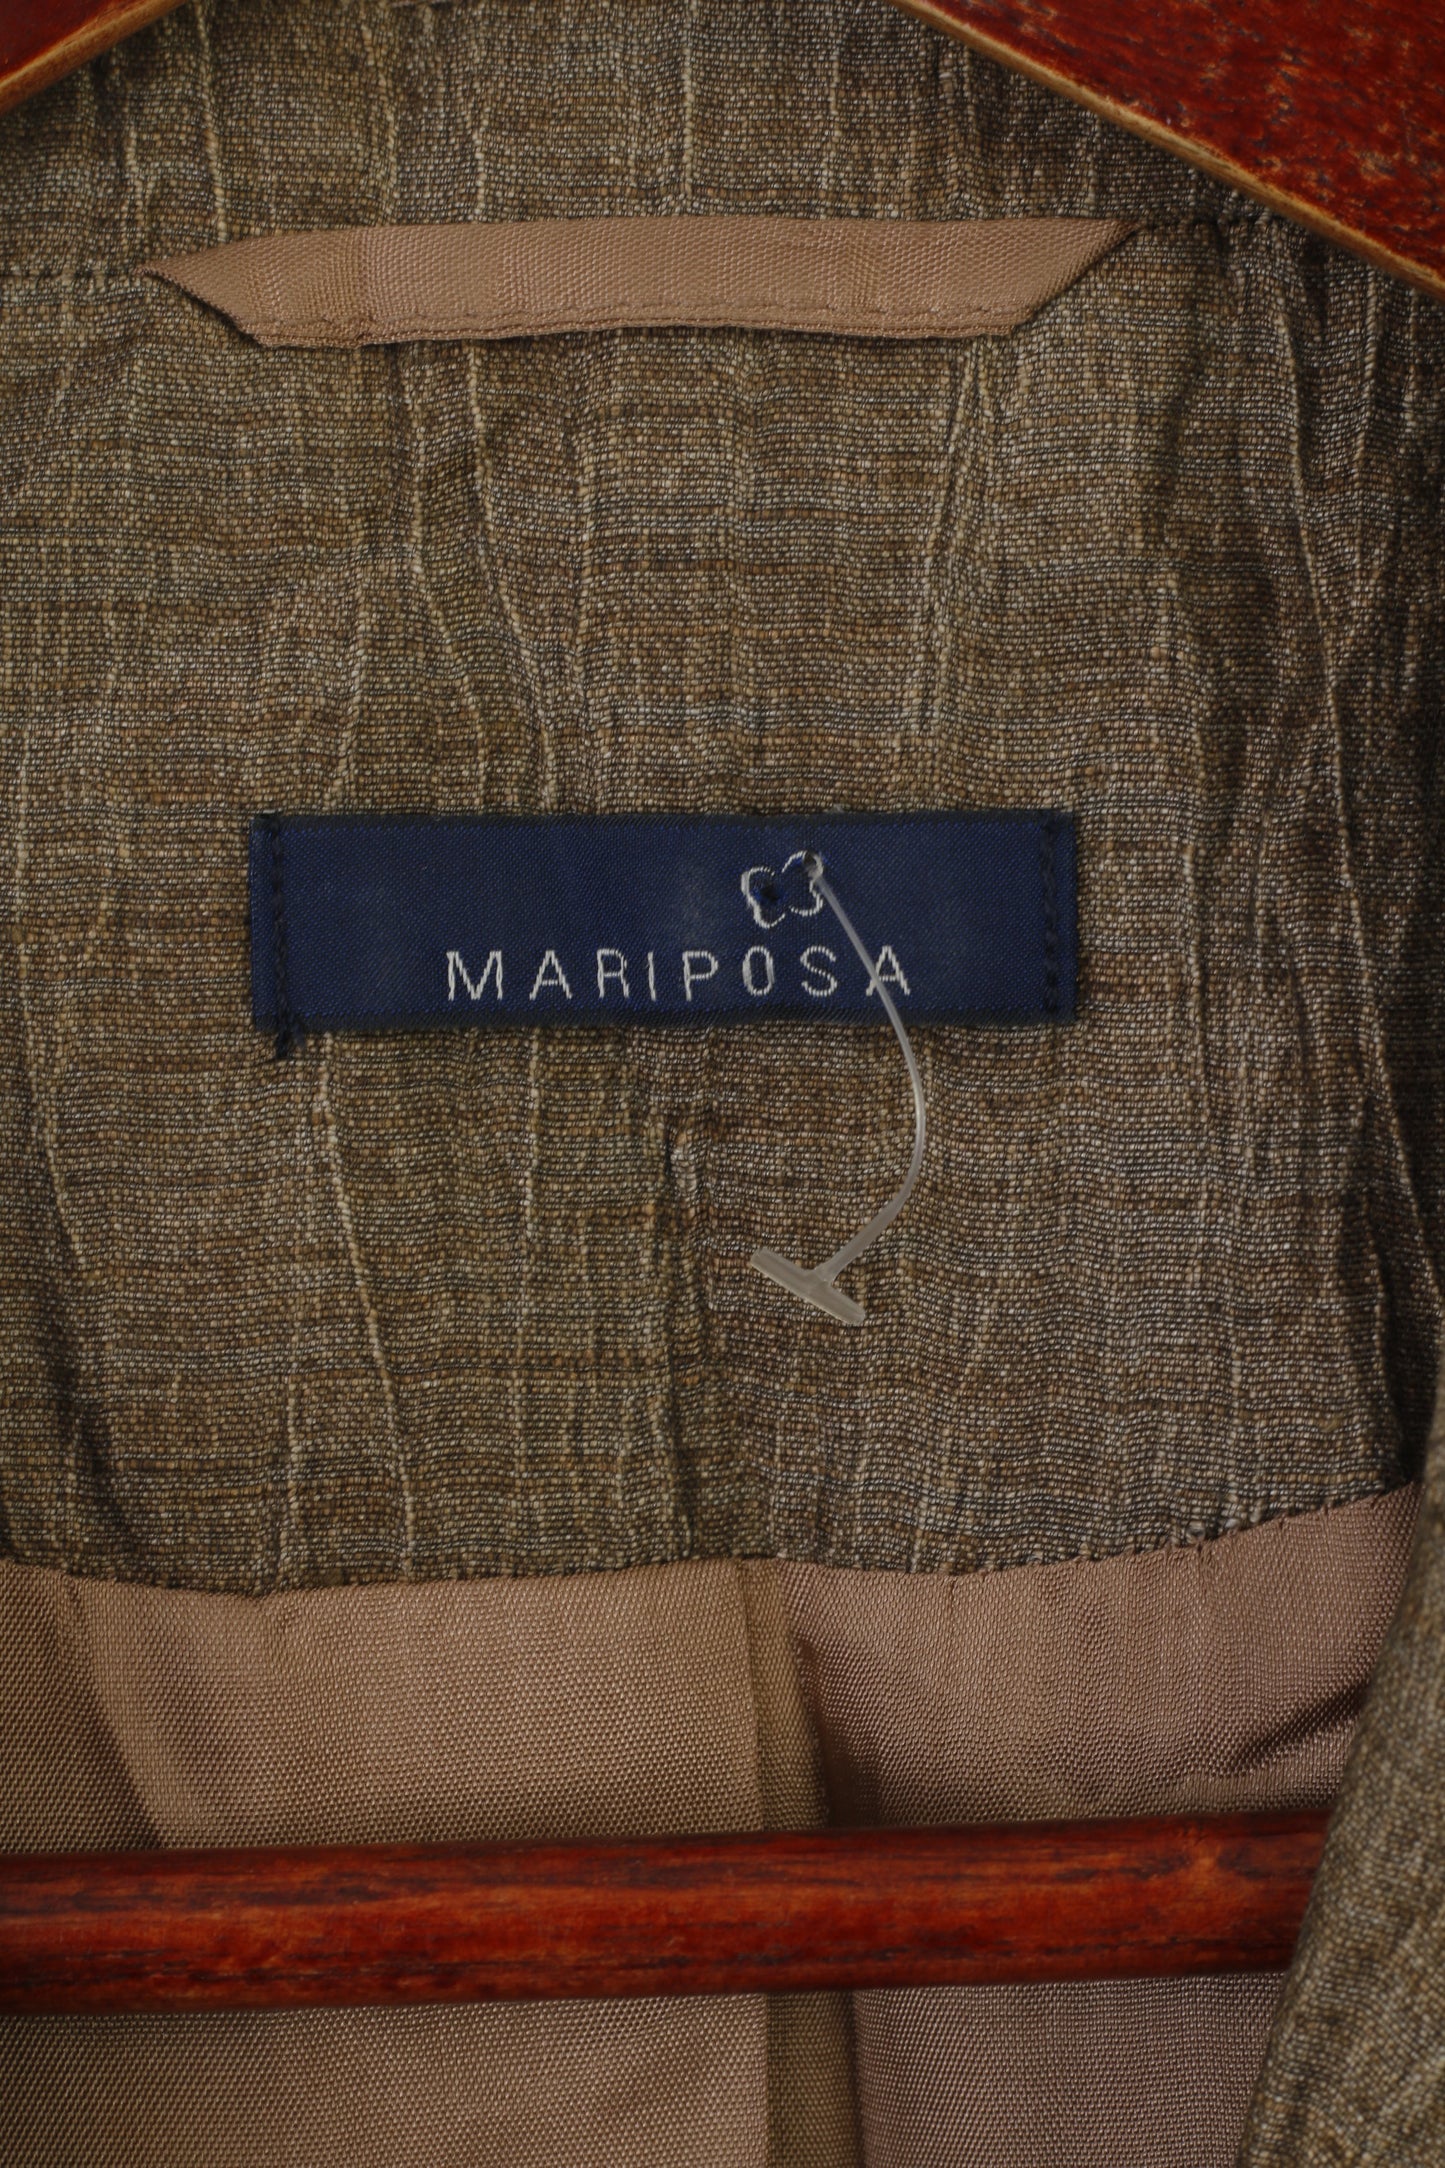 Mariposa Women 46 20 XL Blazer Gold Shiny Linen Nylon Blend Vintage Soft Jacket